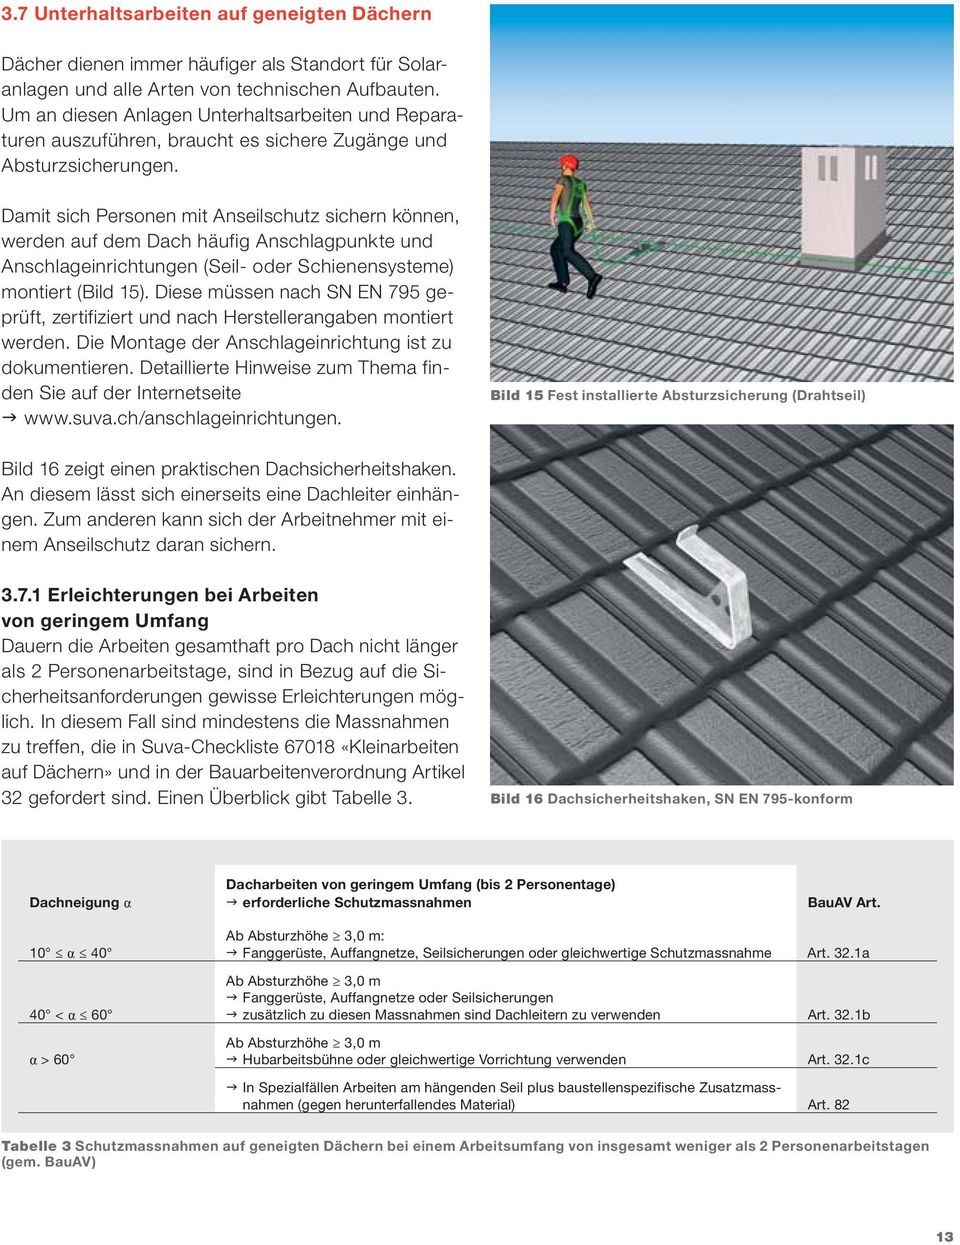 Damit sich Personen mit Anseilschutz sichern können, werden auf dem Dach häufig Anschlagpunkte und Anschlageinrichtungen (Seil- oder Schienensysteme) montiert (Bild 15).